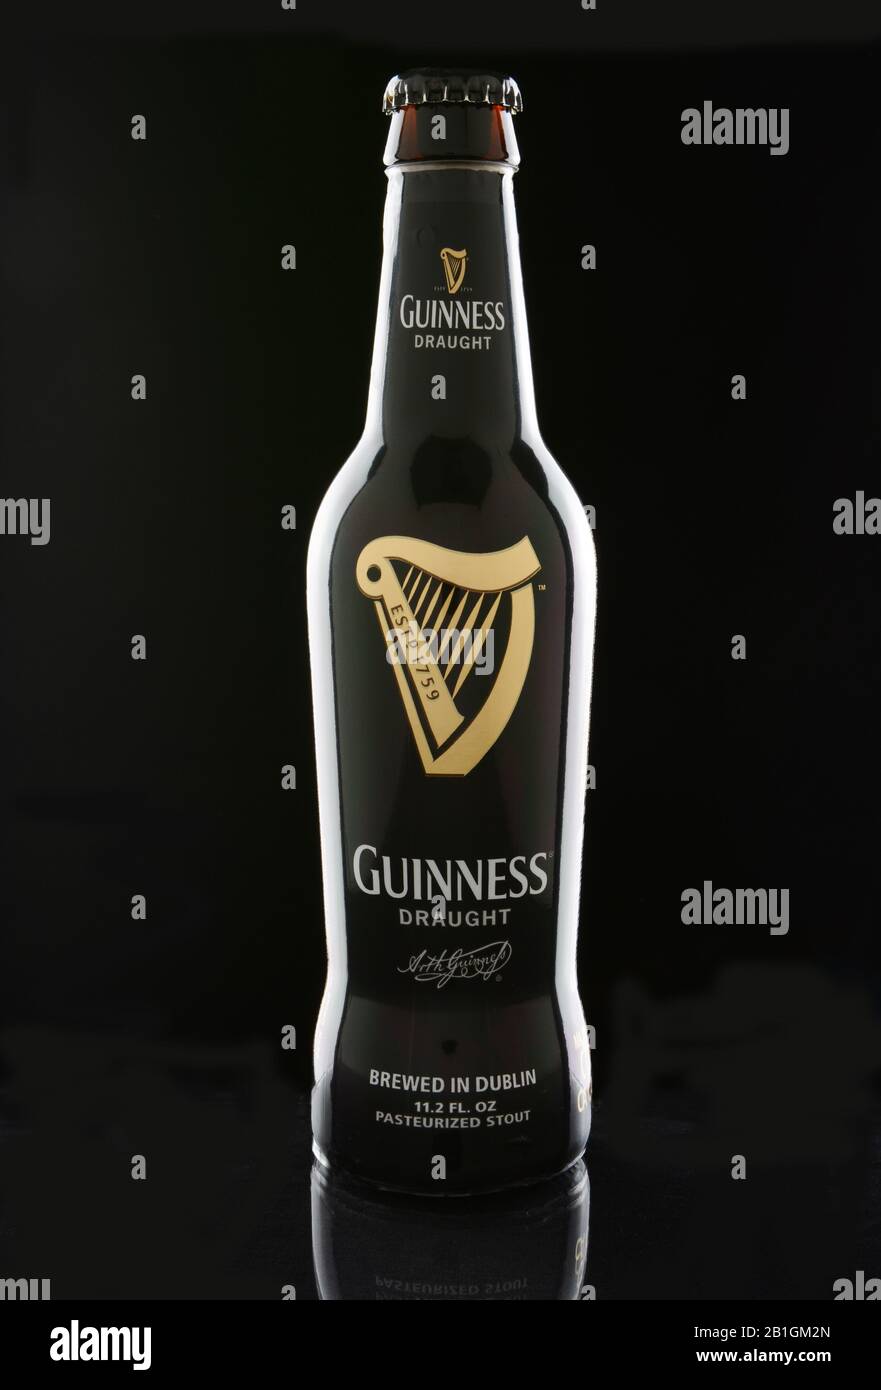 Irvine, CA - 12 GENNAIO 2015: Una bottiglia di Guinness Draft su sfondo nero. Guinness produce birra in Irlanda dal 1759, ed è uno dei Foto Stock